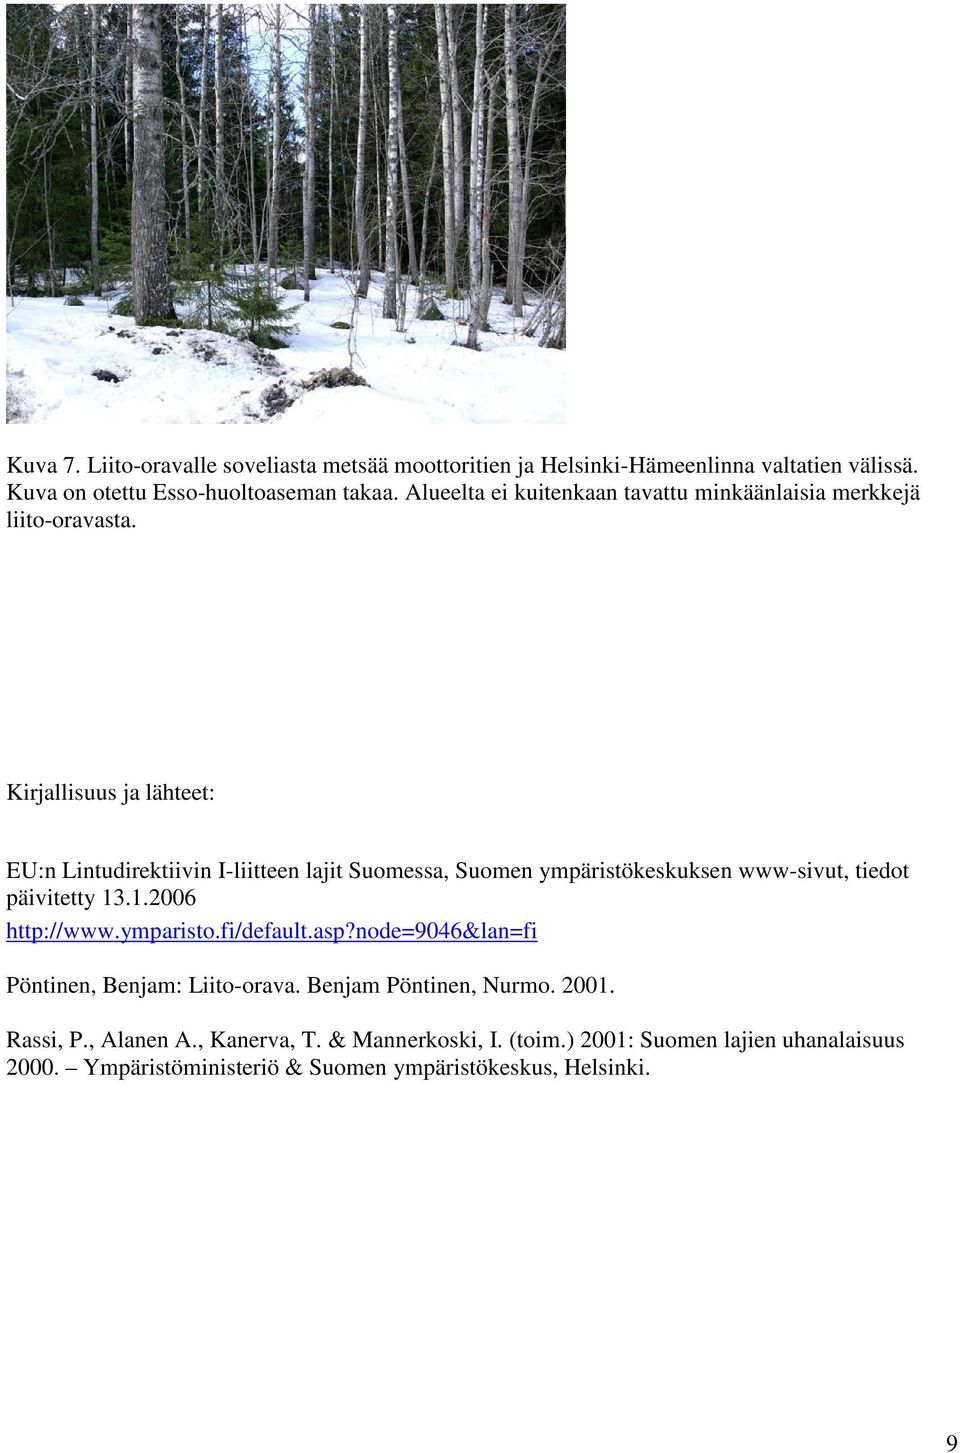 Kirjallisuus ja lähteet: EU:n Lintudirektiivin I-liitteen lajit Suomessa, Suomen ympäristökeskuksen www-sivut, tiedot päivitetty 13.1.2006 http://www.